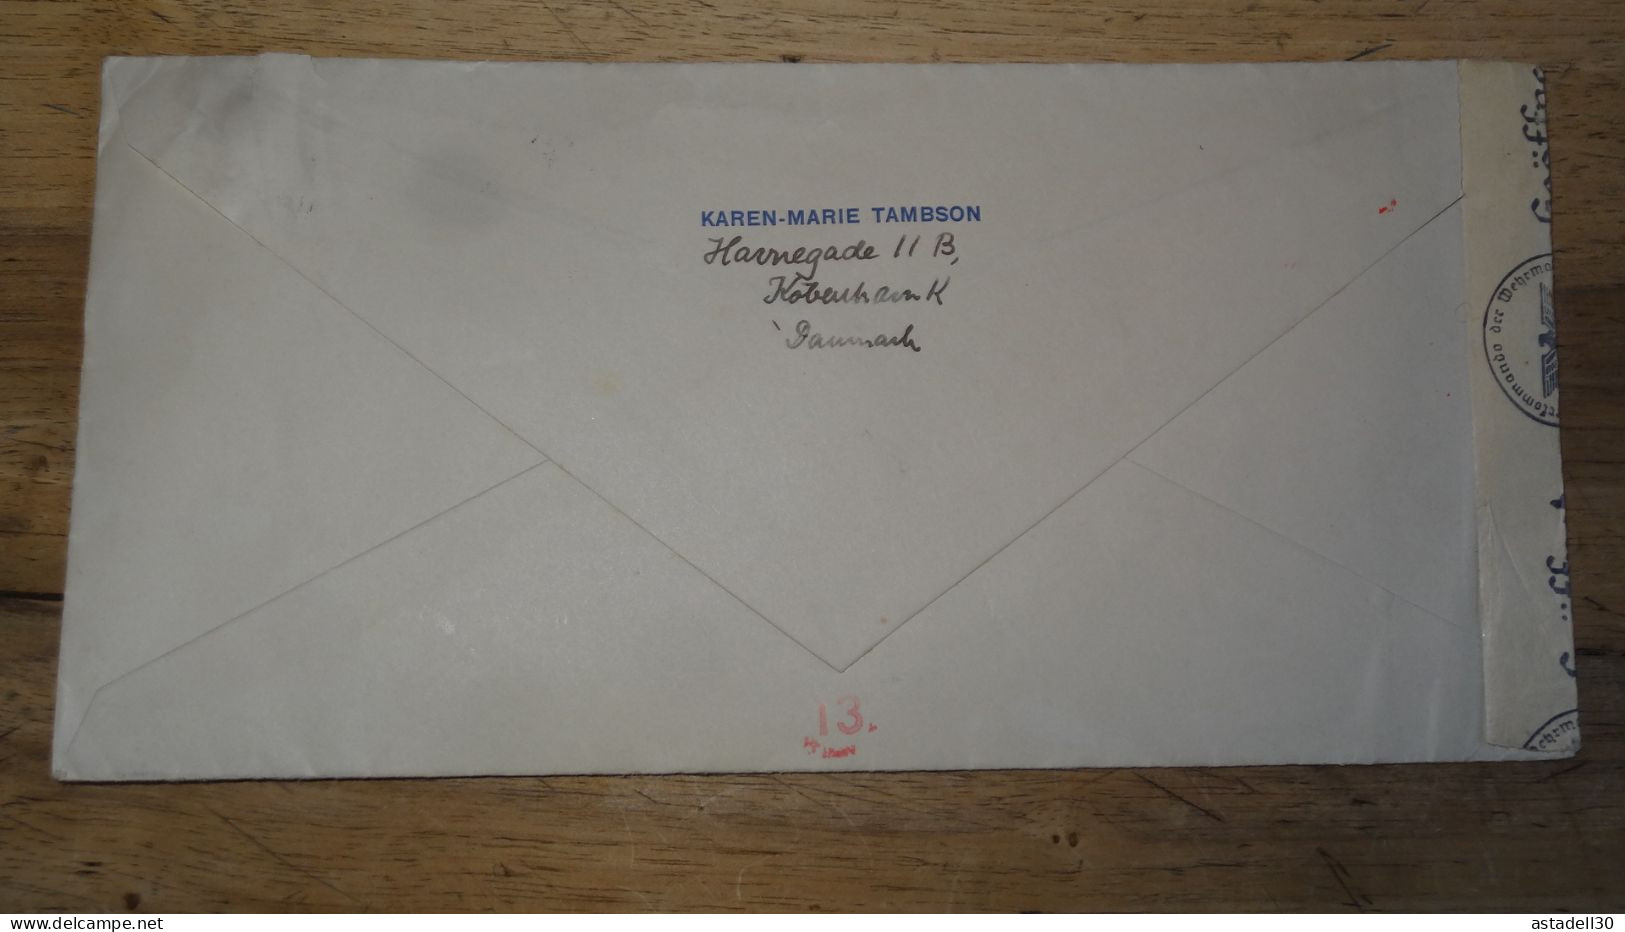 Grande Enveloppe DANEMARK, Avec Censure - 1942 .......... 240424......... CL9-57a - Briefe U. Dokumente